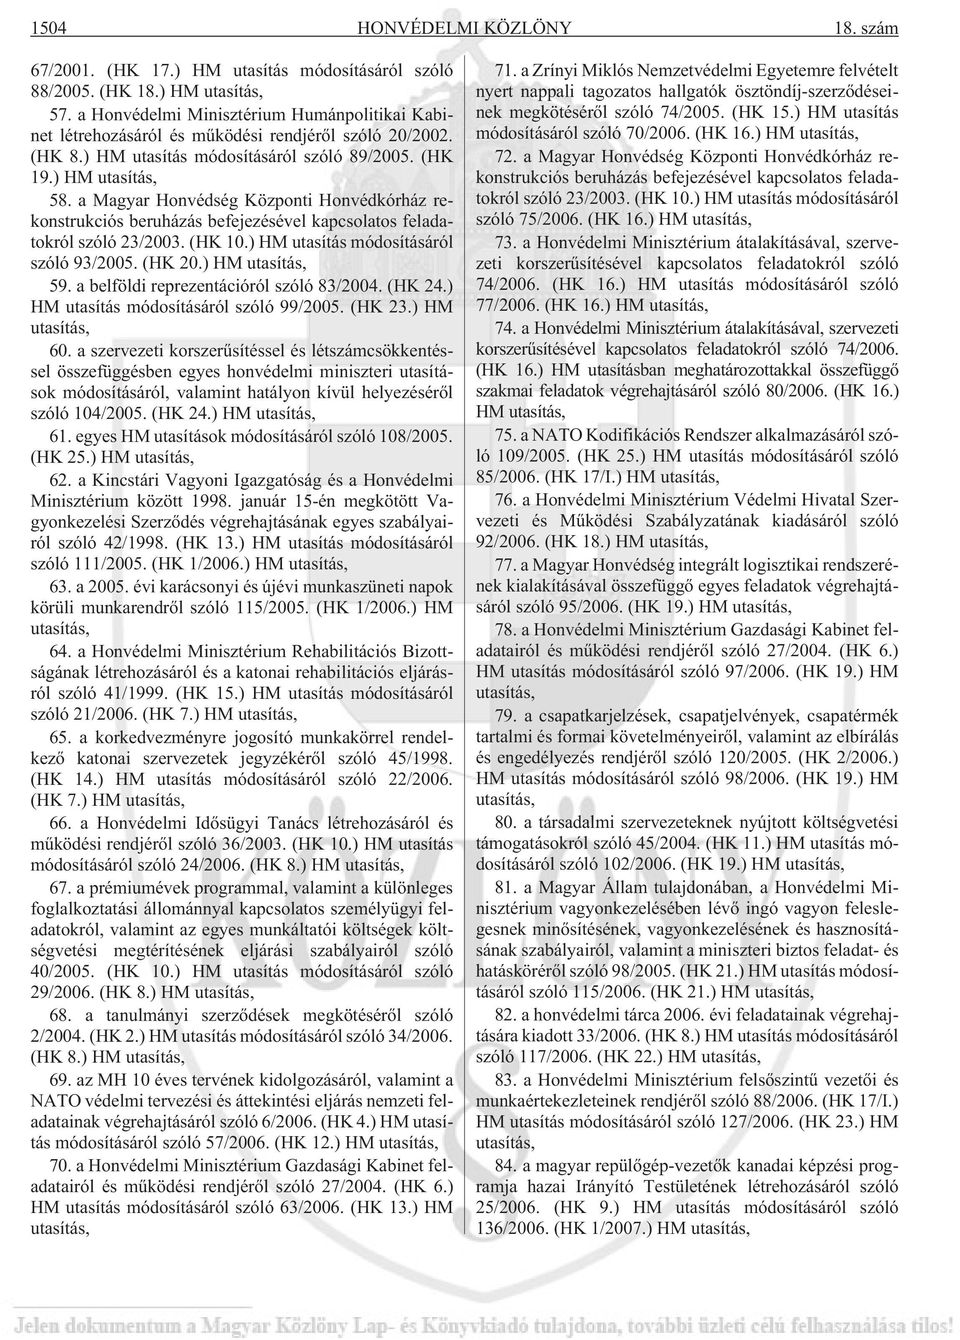 a Magyar Honvédség Központi Honvédkórház rekonstrukciós beruházás befejezésével kapcsolatos feladatokról szóló 23/2003. (HK 10.) HM utasítás módosításáról szóló 93/2005. (HK 20.) HM utasítás, 59.